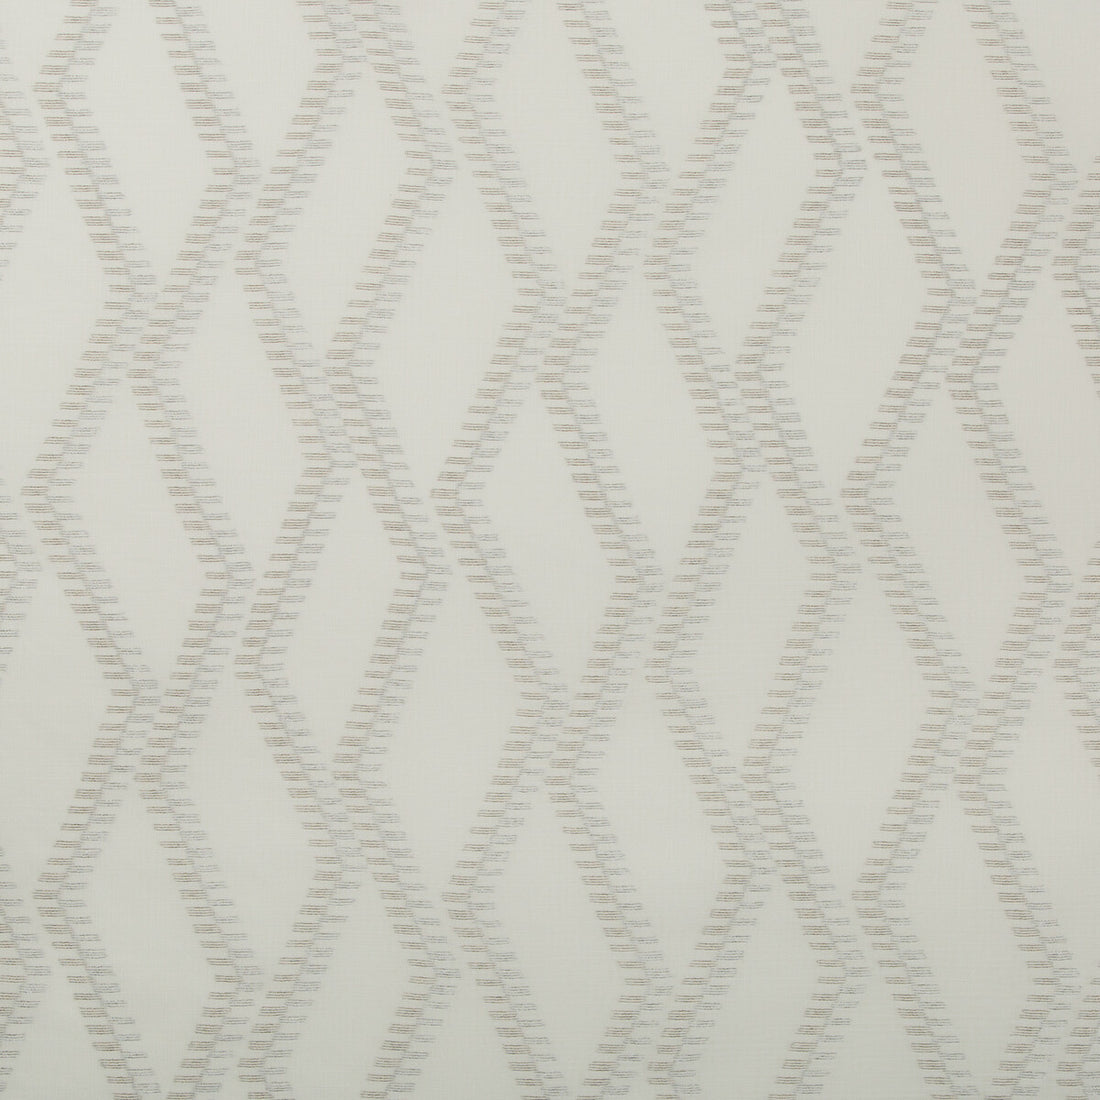 Kravet Basics fabric in 4695-106 color - pattern 4695.106.0 - by Kravet Basics